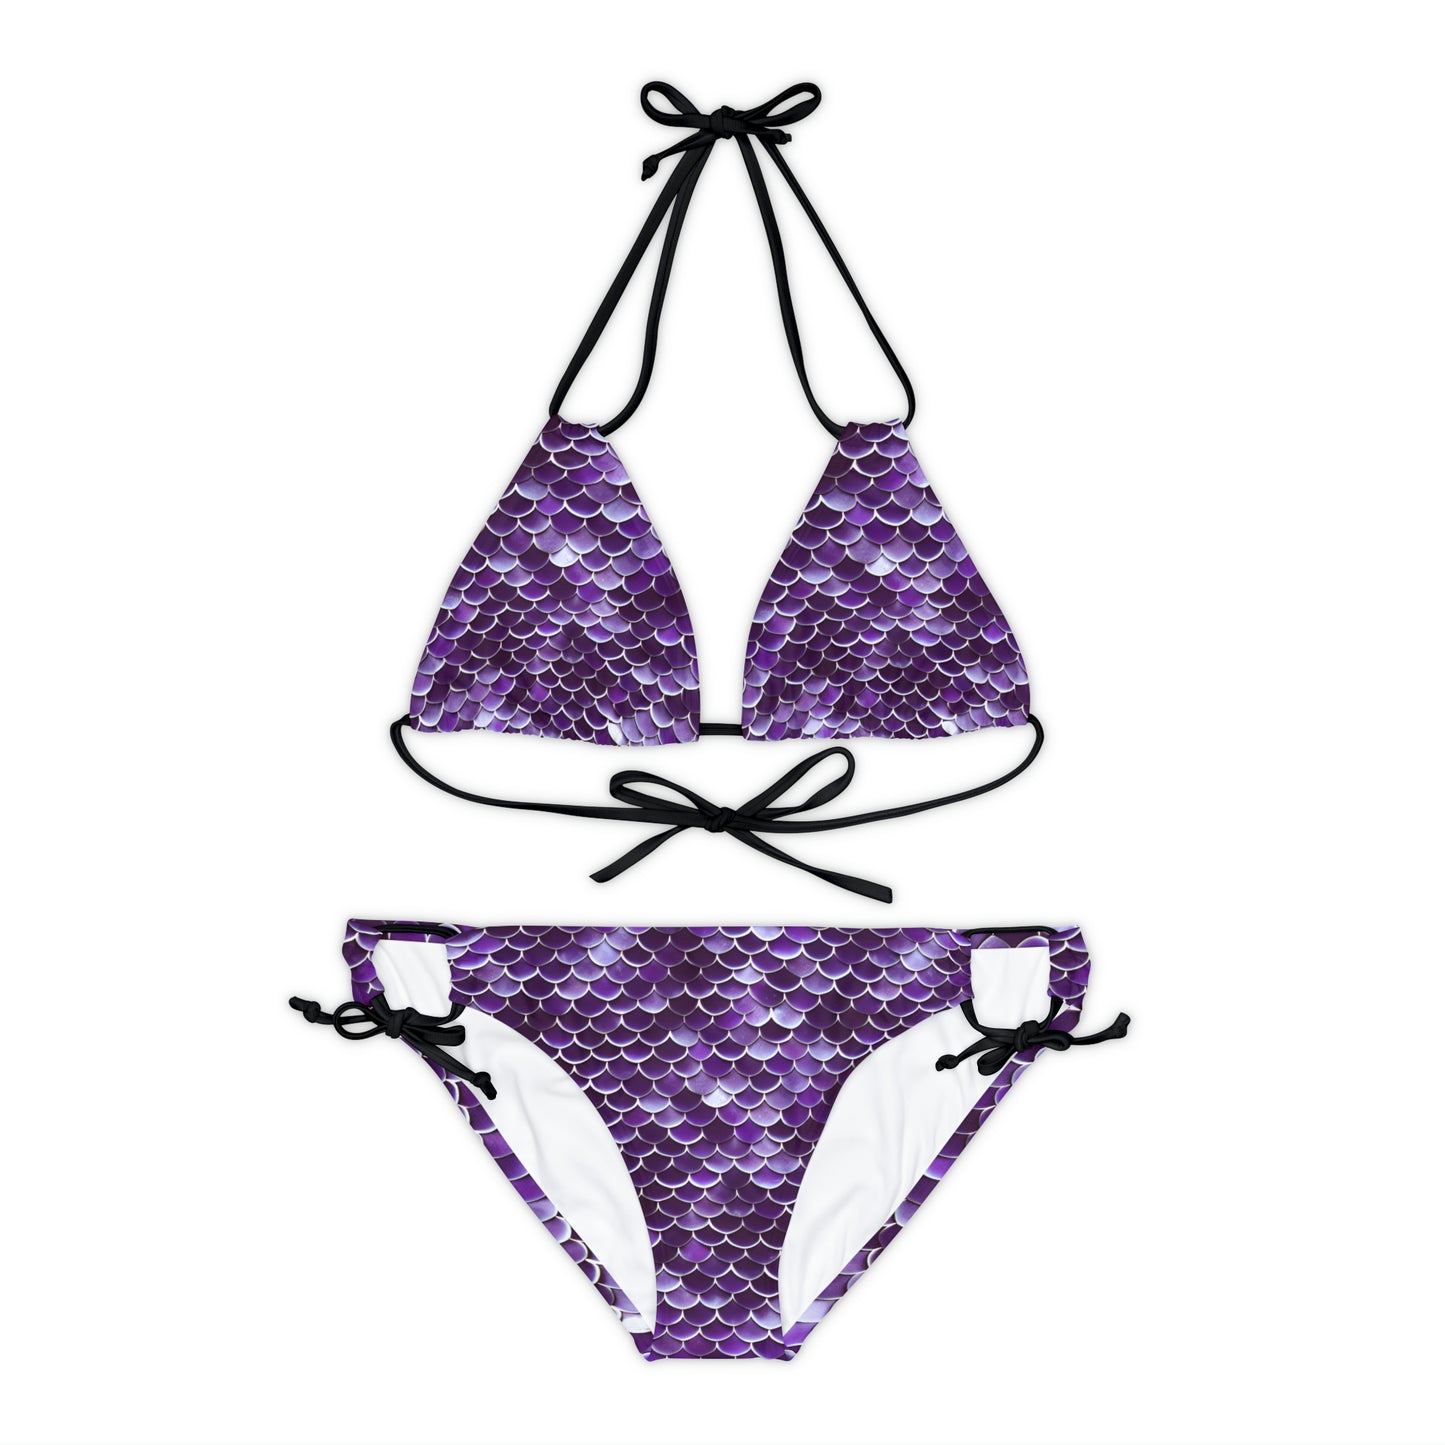 Purple Mermaid Scales Strappy Bikini Set Ocean-Inspired Swimsuit Style, Swimwear Inspired by the Little Mermaid Ariel, Woman Girl